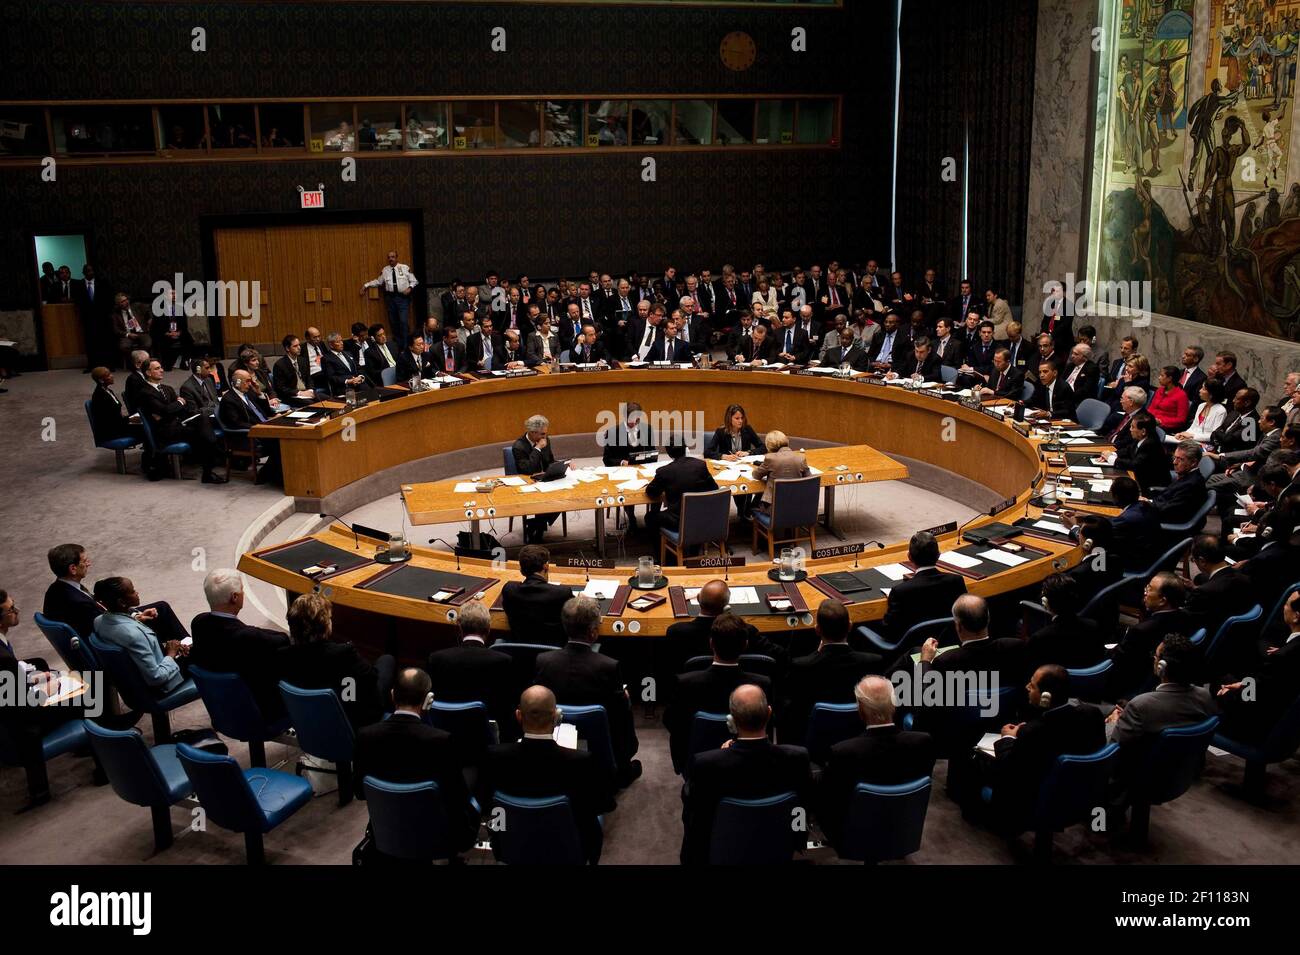 24 de septiembre de 2009 - Nueva York, NY - el presidente Barack Obama preside una reunión del Consejo de Seguridad de las Naciones Unidas en la sede de la ONU en Nueva York, Nueva York, 24 de septiembre de 2009. Crédito de la Foto: Pete Souza/Casa Blanca/Sipa Press/0910141908 Foto de stock